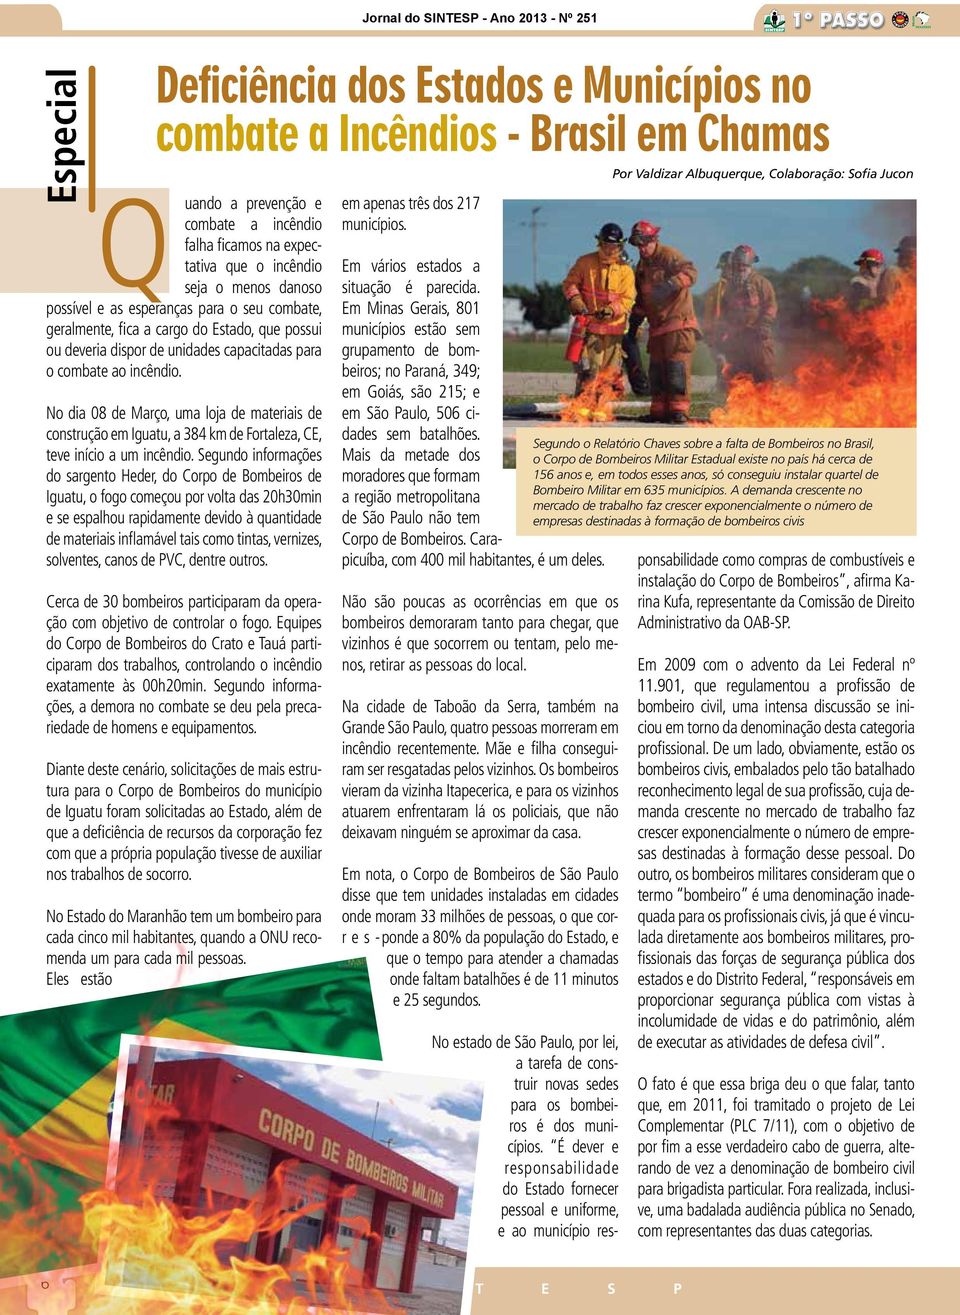 No dia 08 de Março, uma loja de materiais de construção em Iguatu, a 384 km de Fortaleza, CE, teve início a um incêndio.